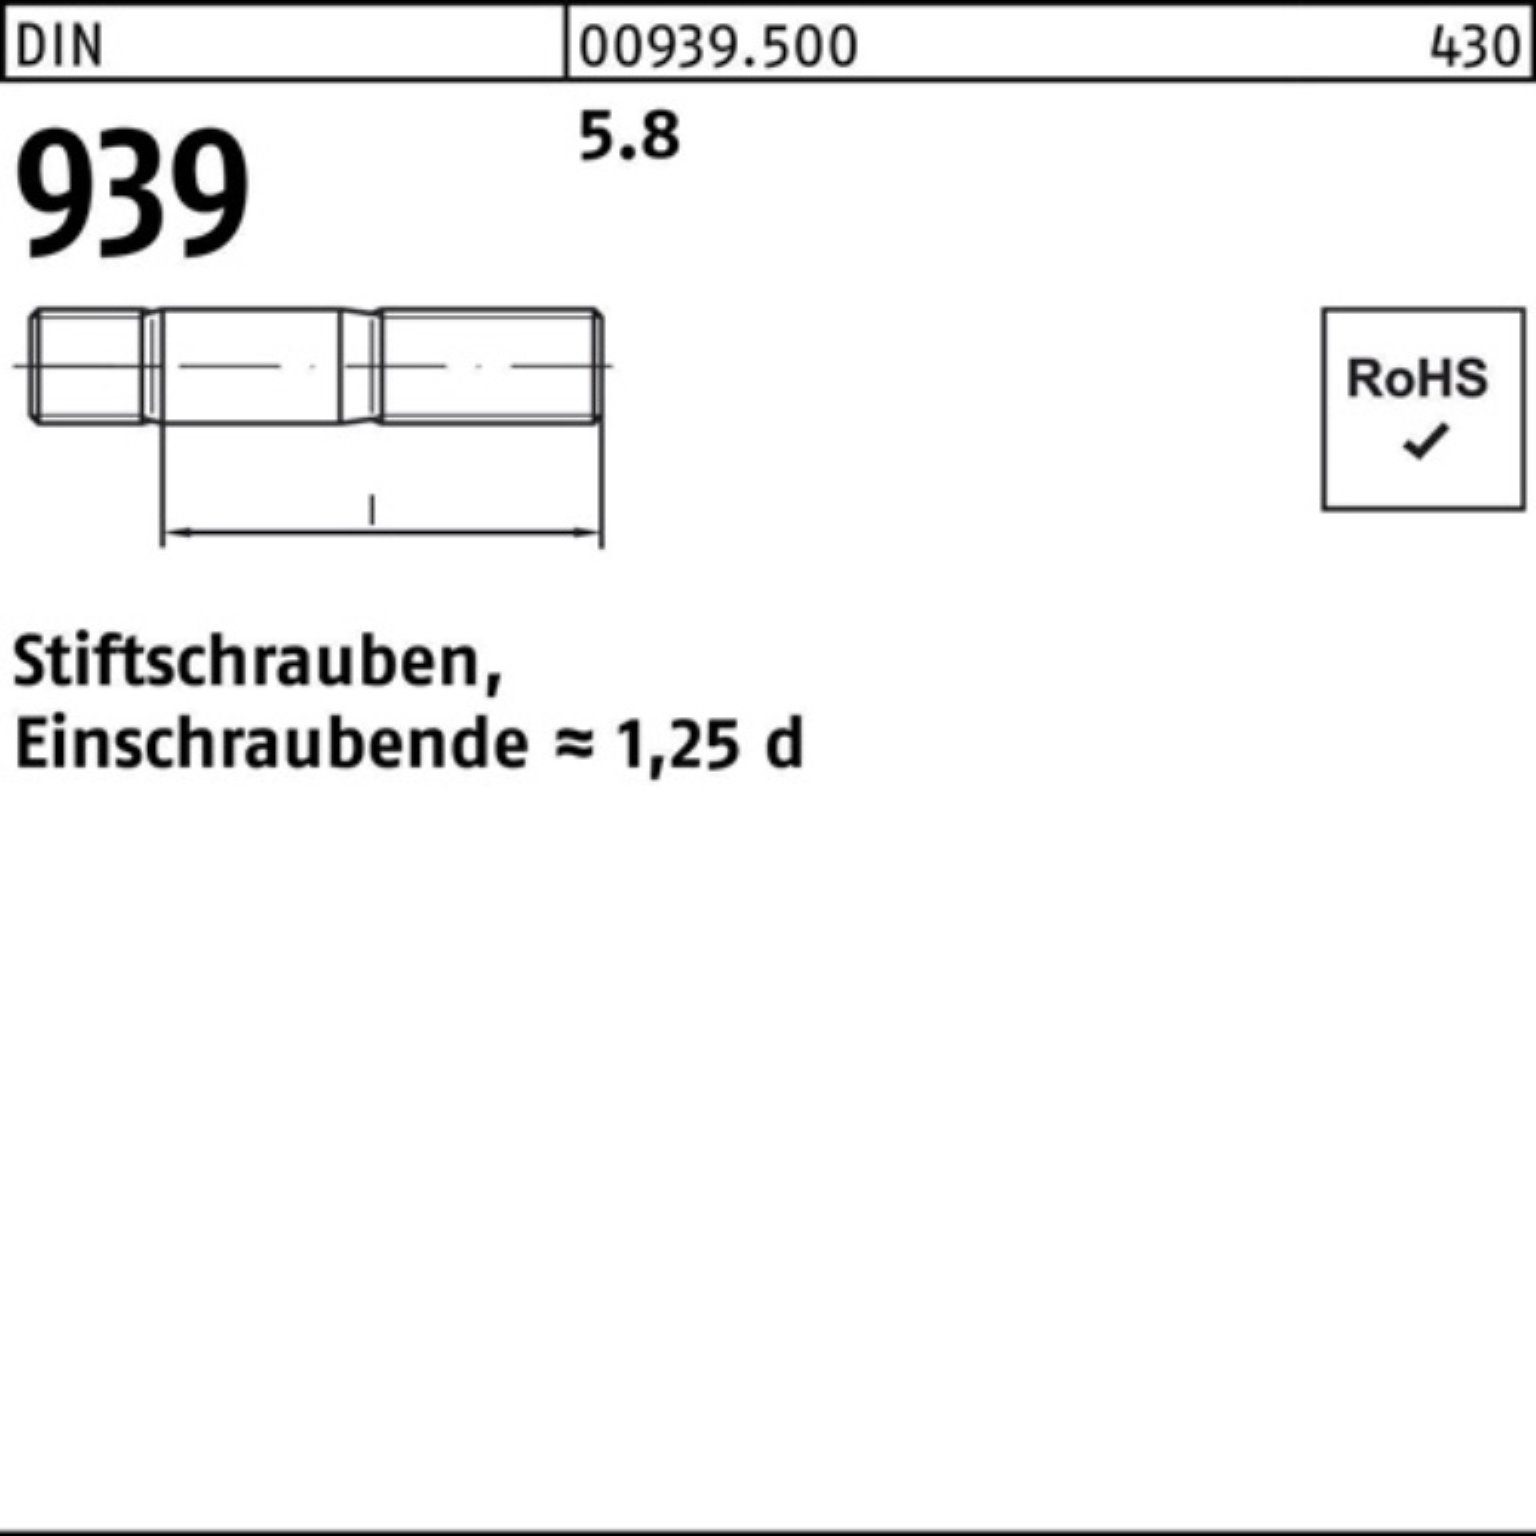 Stiftschraube 939 S Stiftschraube Einschraubende=1,25d 65 100er 5.8 DIN Pack M27x Reyher 10